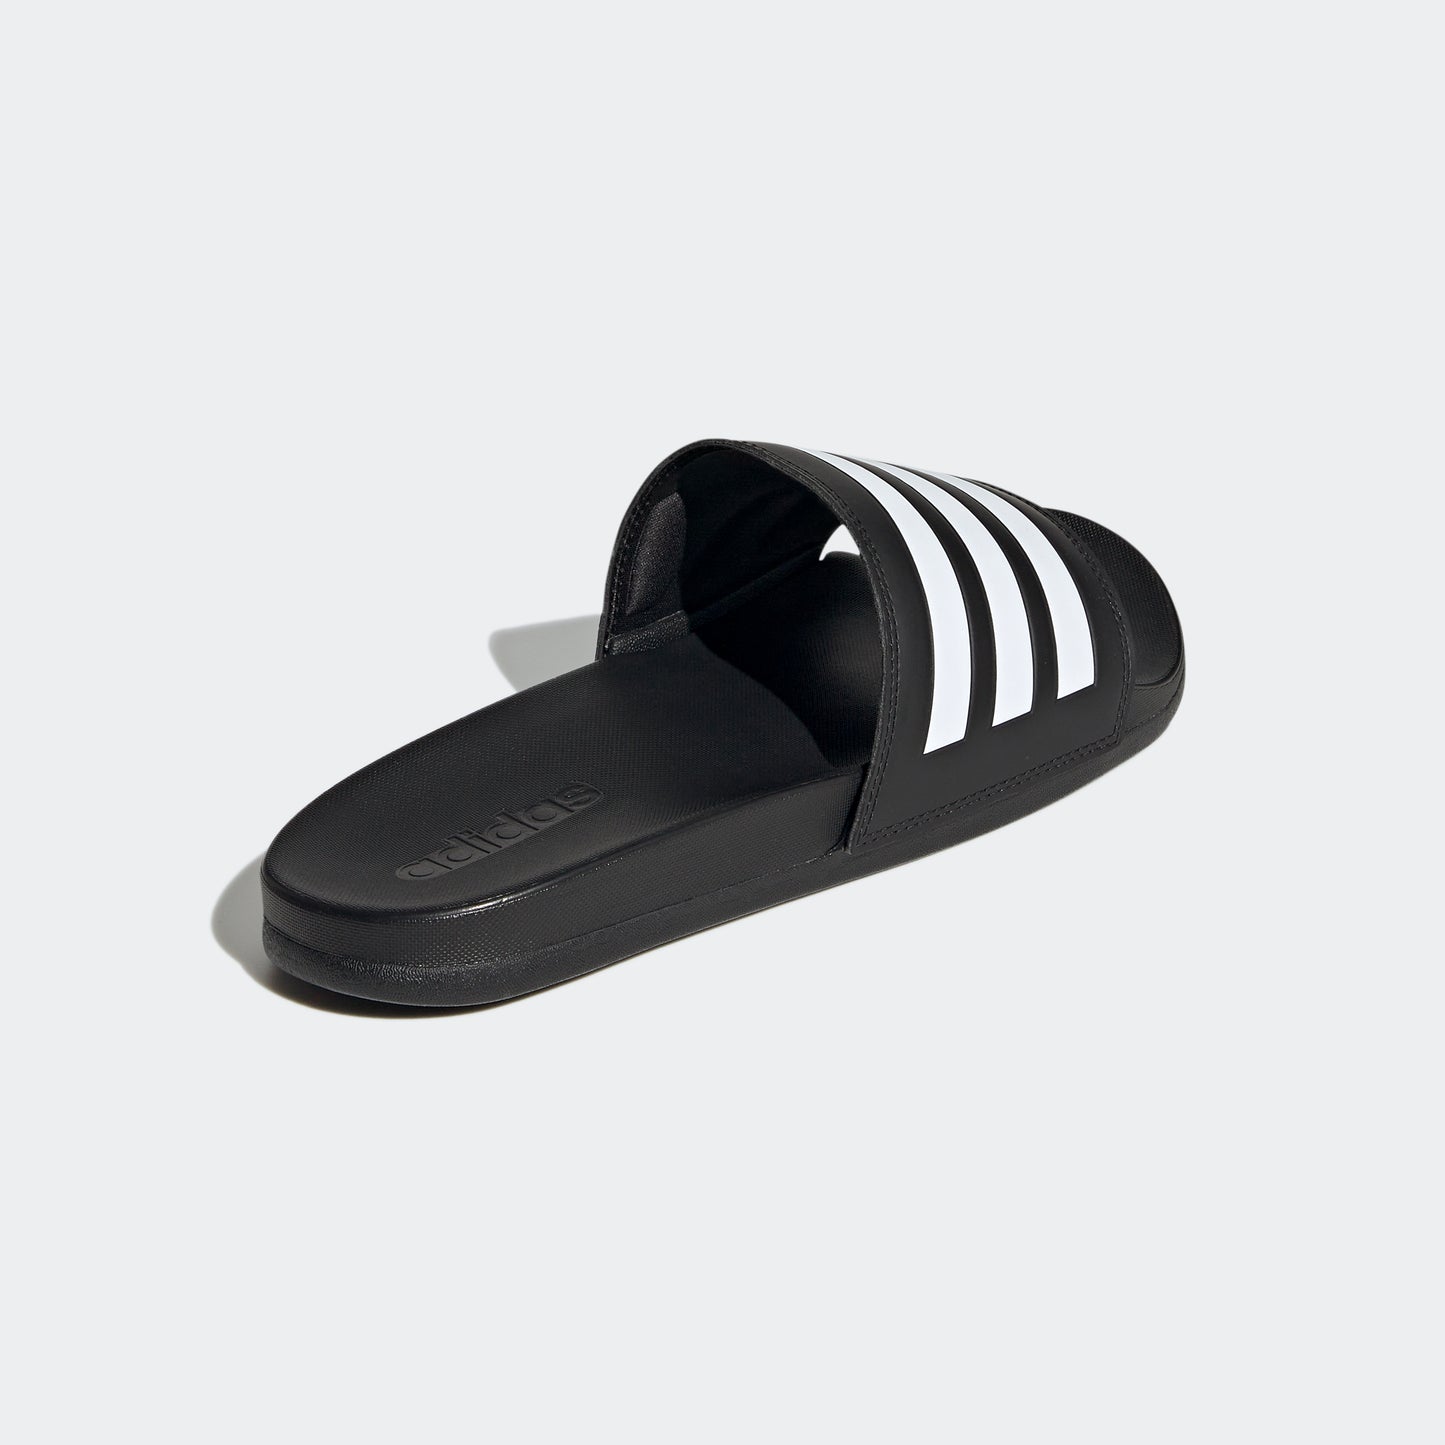 adidas Adult Unisex Adilette Comfort Slide Black / White / Black